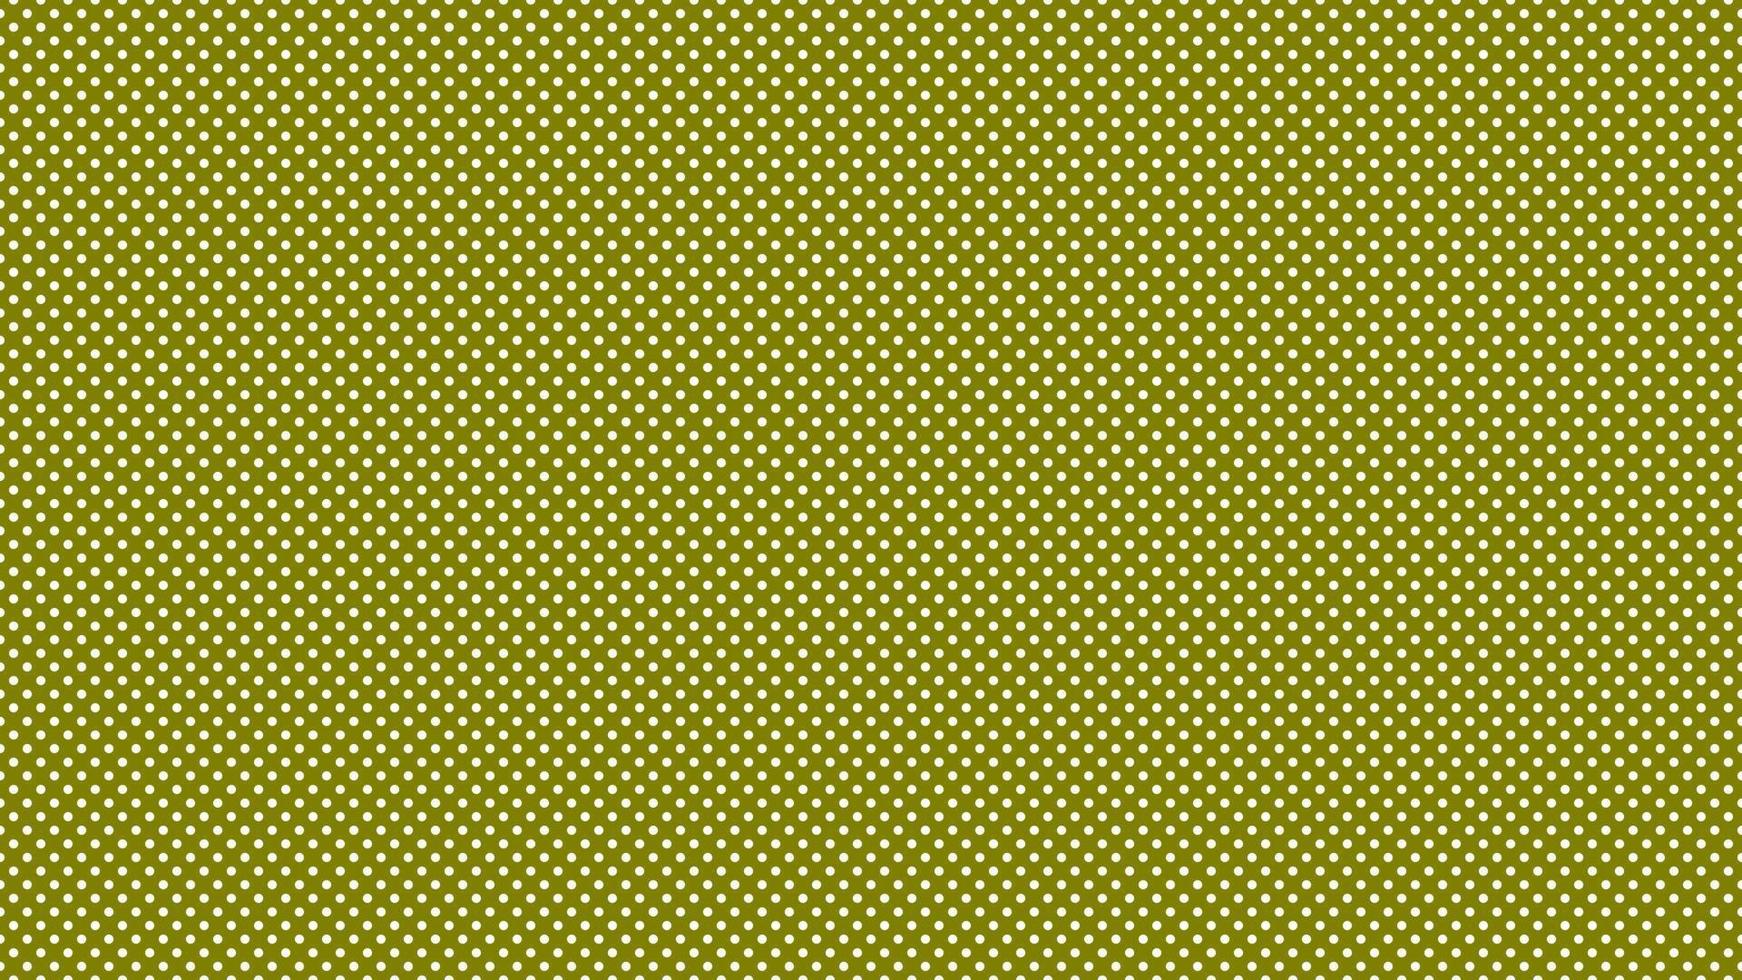 bianca colore polka puntini al di sopra di oliva verde sfondo vettore